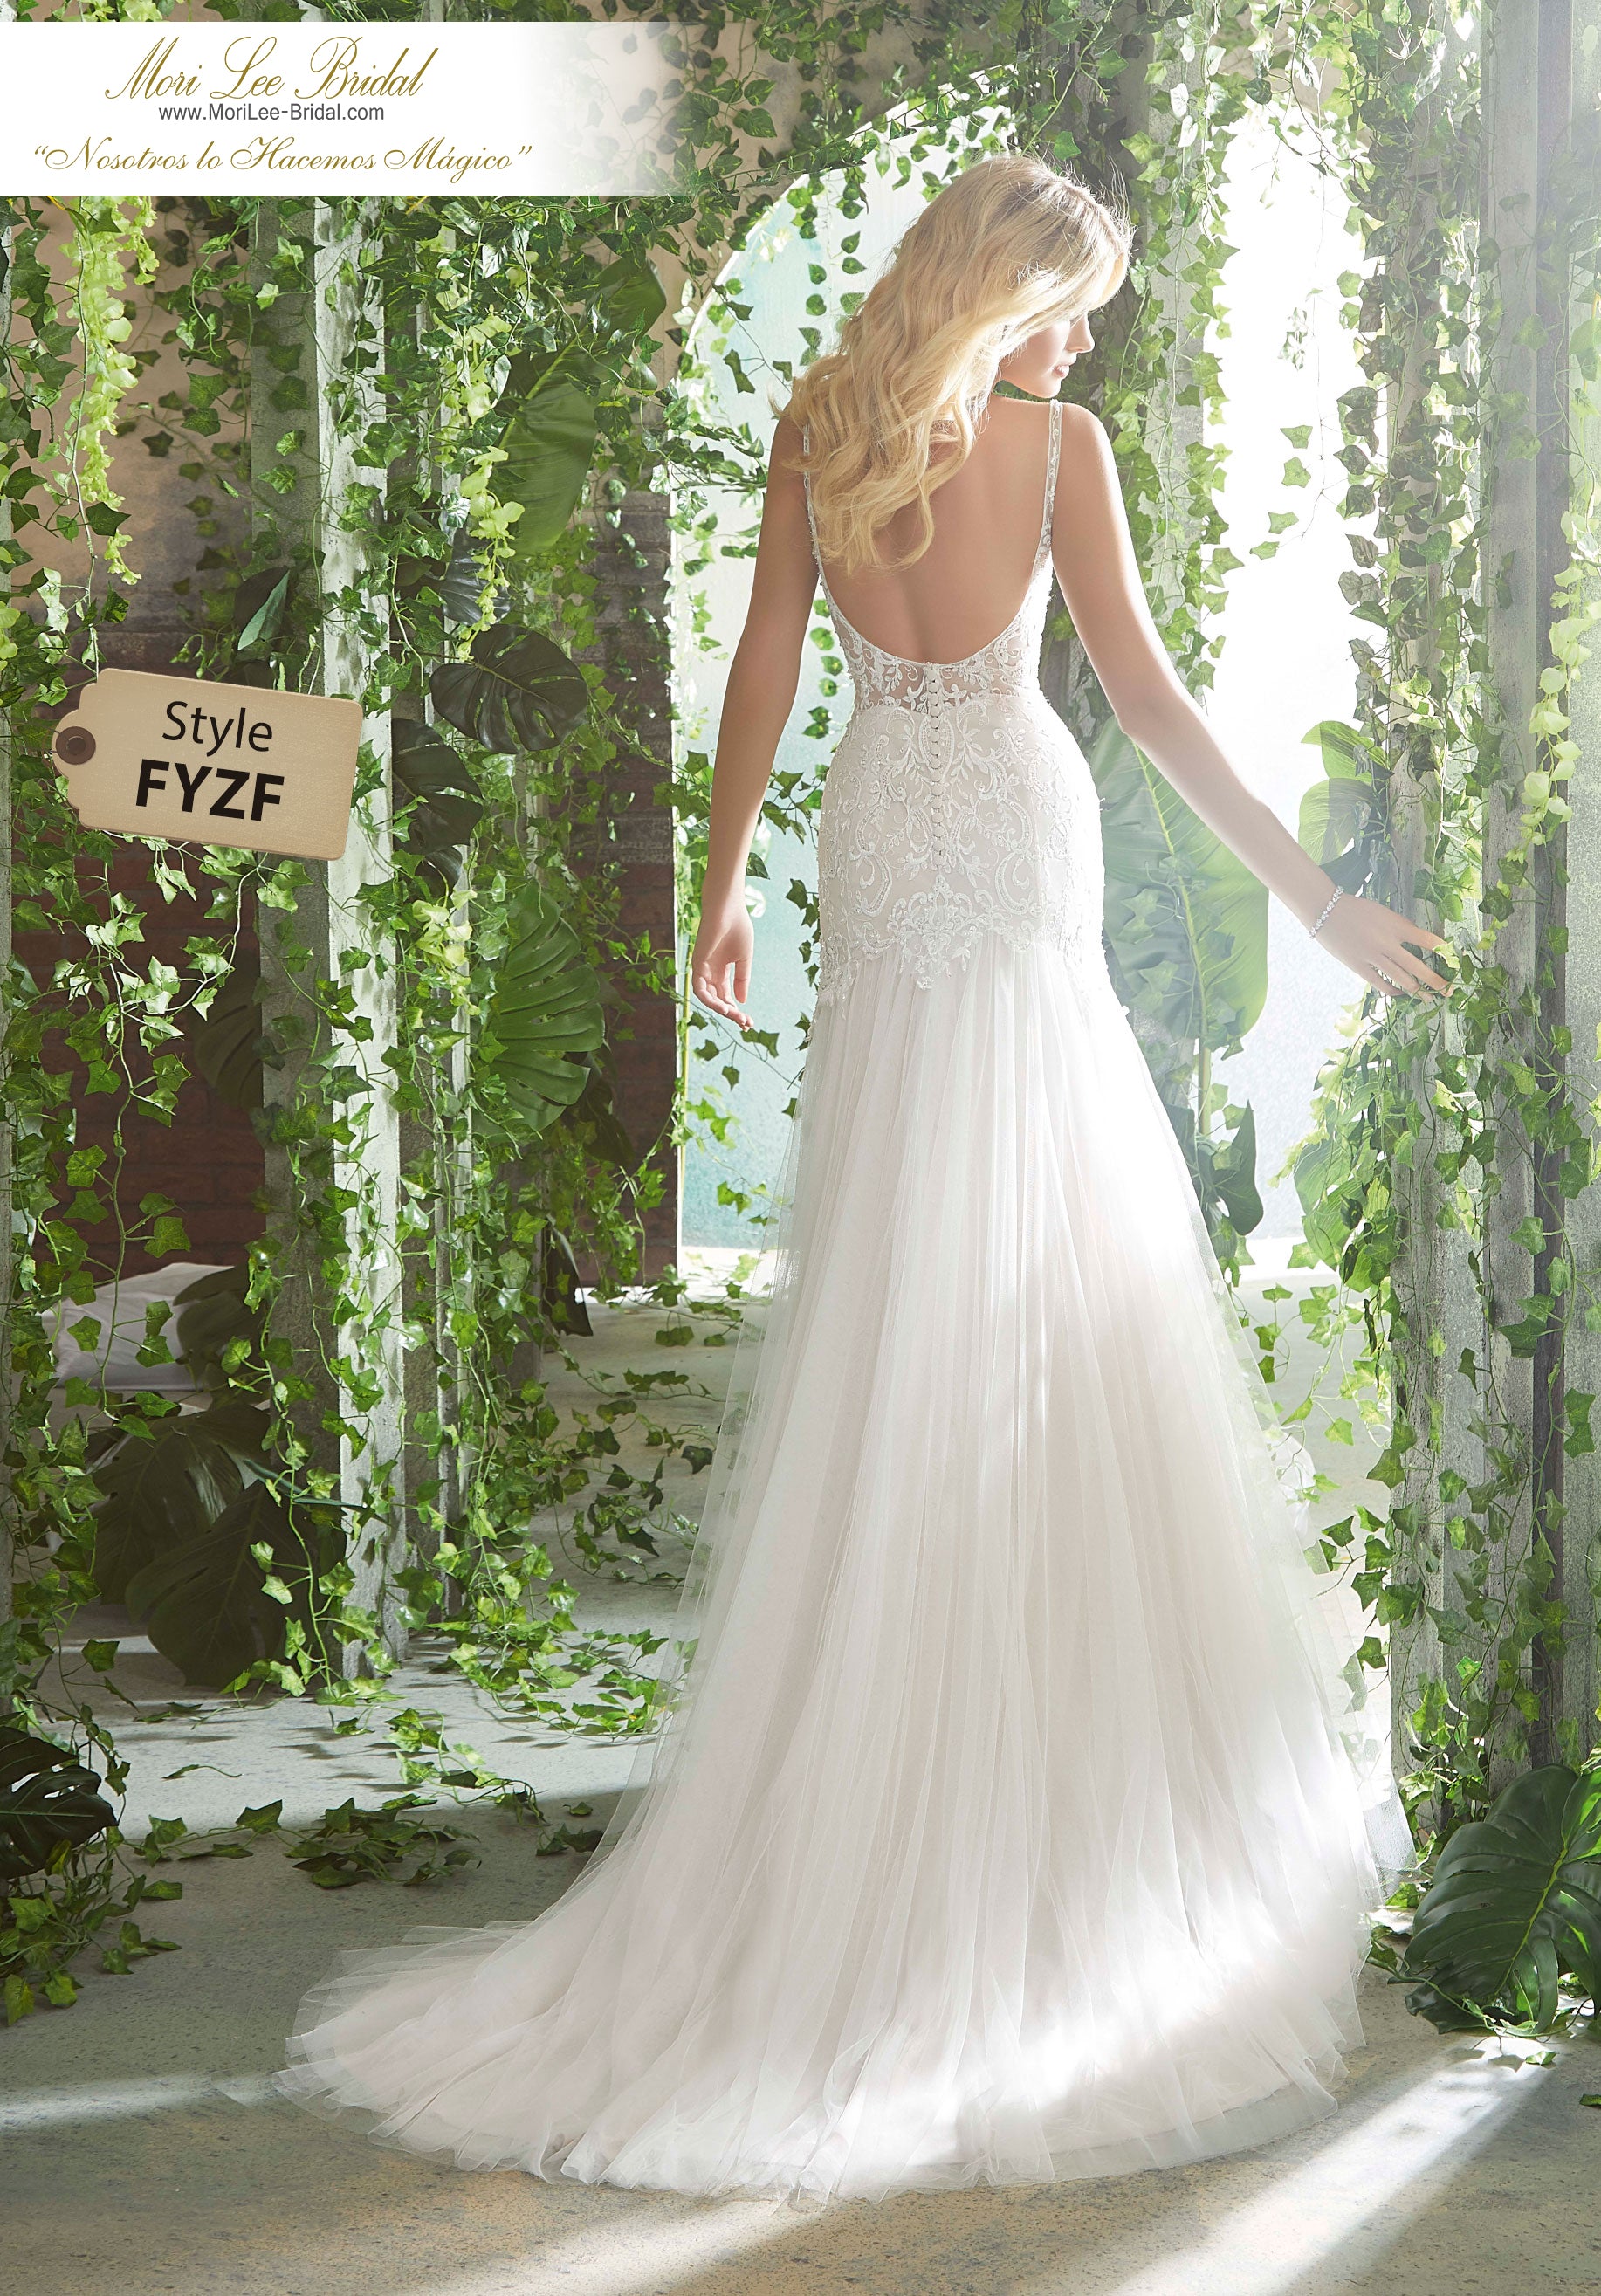 Vestido de novia Peterina tiene un bordado de cuentas de cristal en un vestido de corte sirena confeccionado en tu inglés, suave con lados transparentes y parte trasera. FYZF*